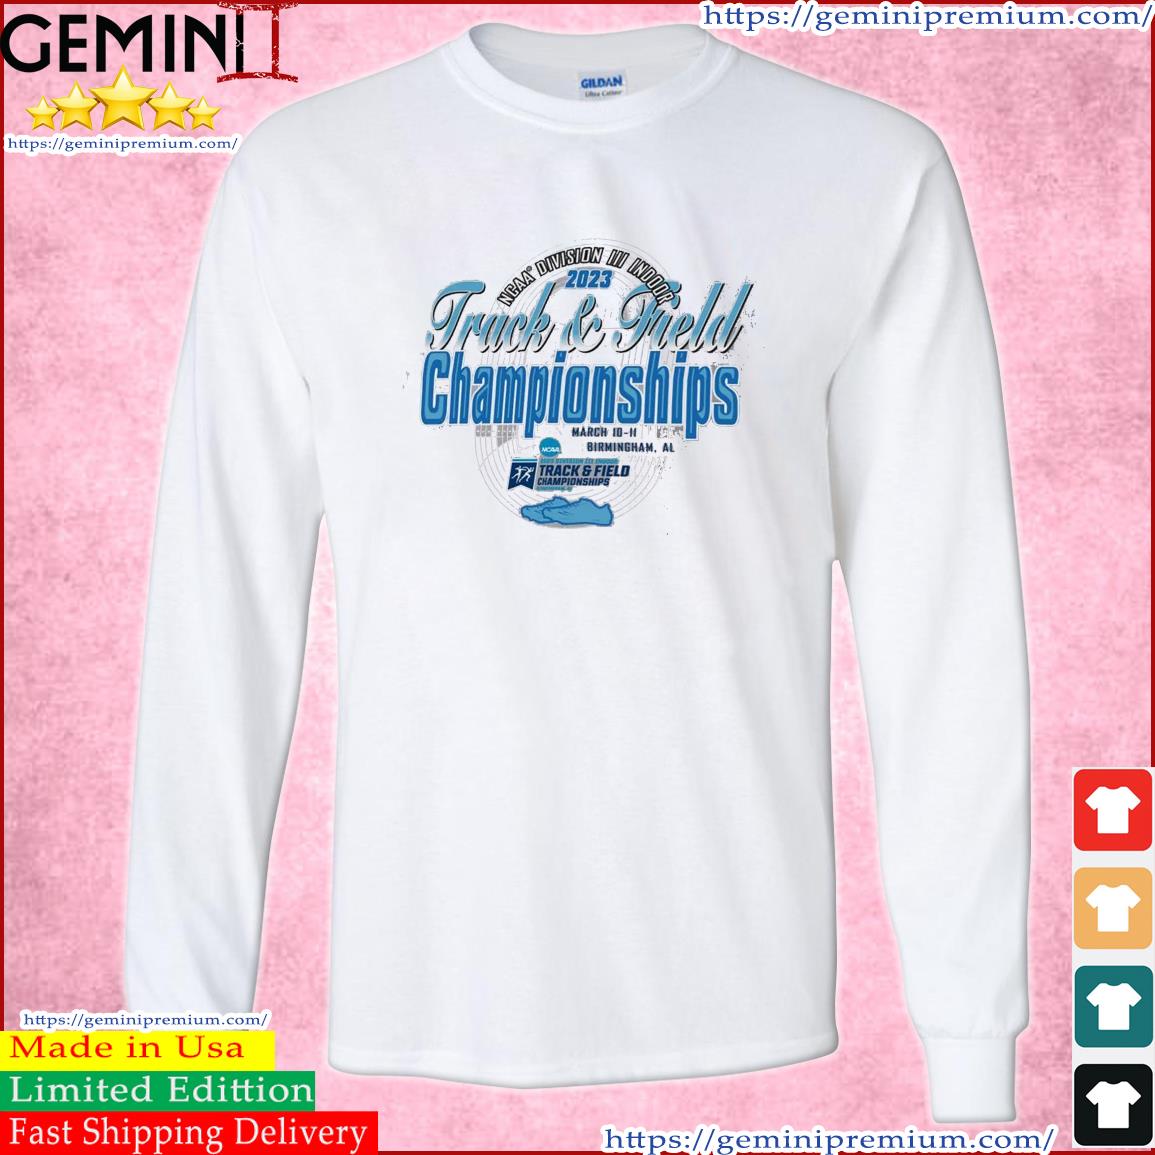 2023 NCAA Division III Indoor Track & Field Championship Birmingham, AL Shirt Long Sleeve Tee